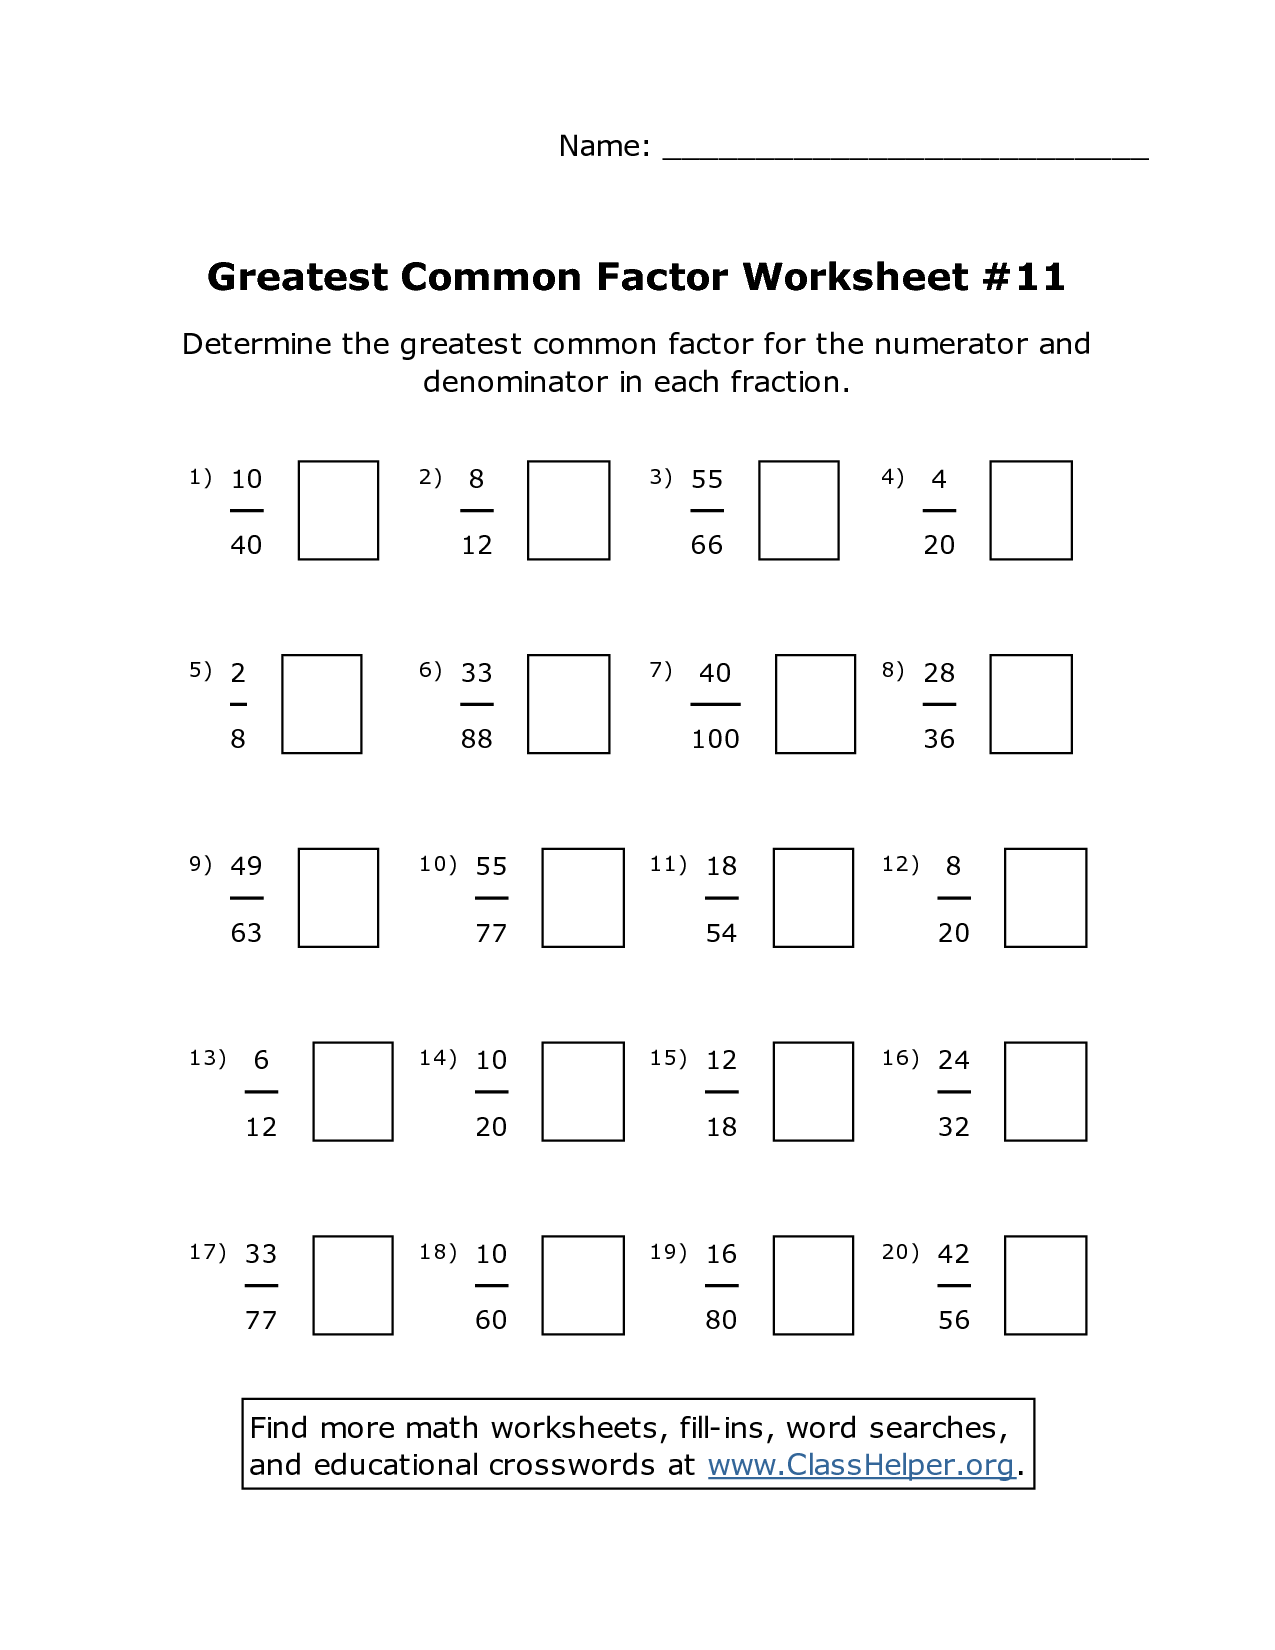 factors-worksheets-e10